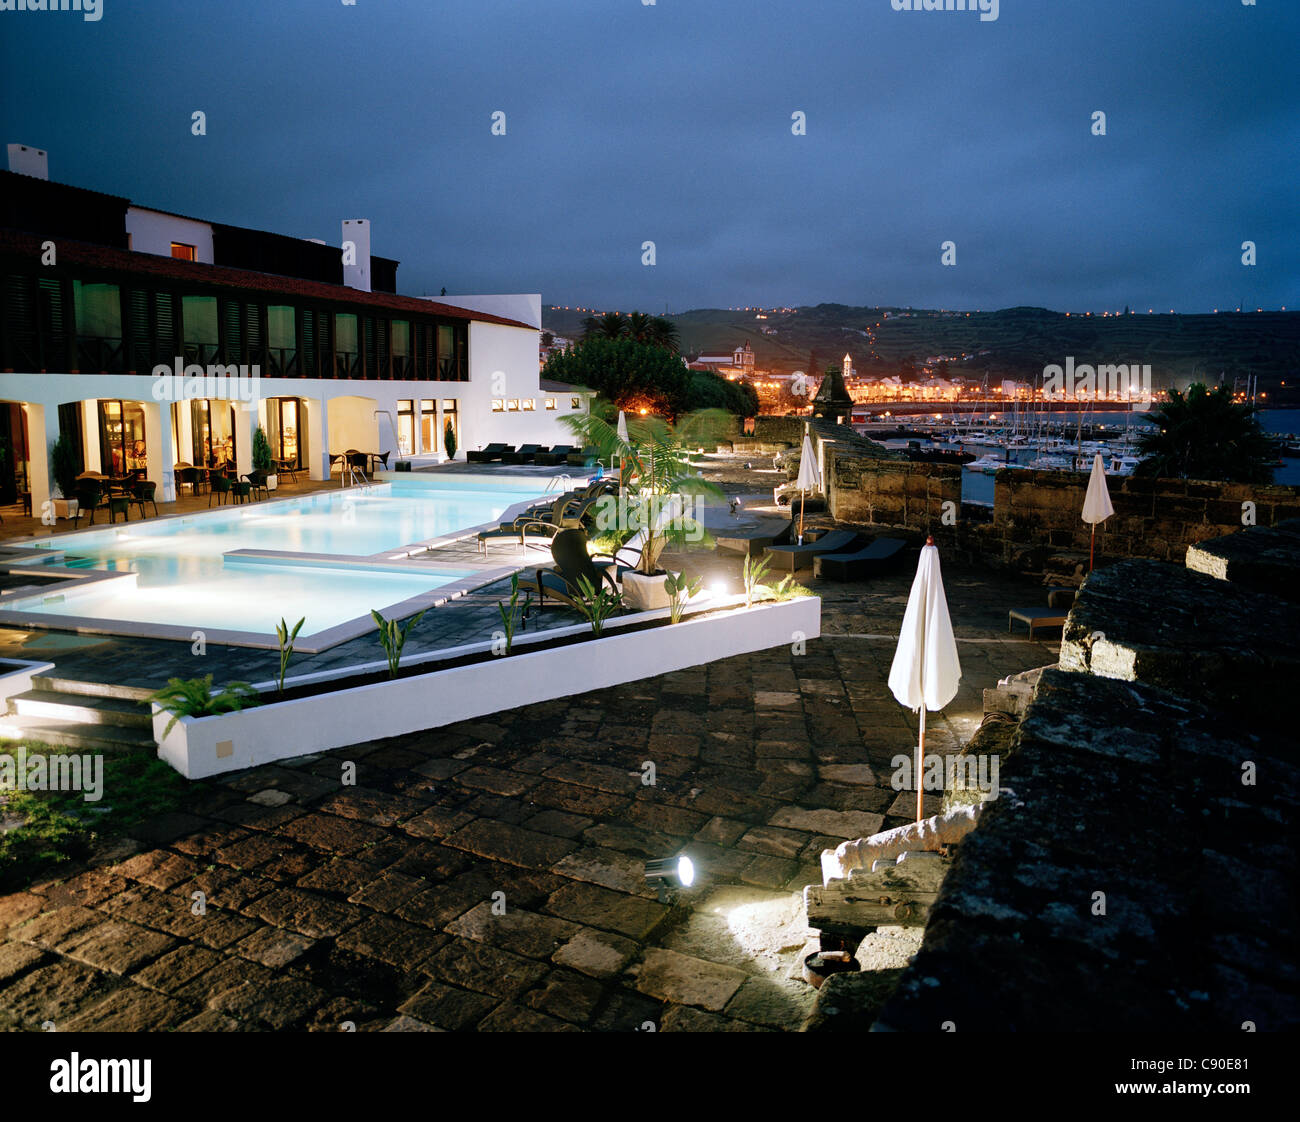 Piscine de l'hôtel Pousada de Portugal, château de Santa Cruz, surplombant le port de Horta, île de Faial, Açores, Portugal Banque D'Images